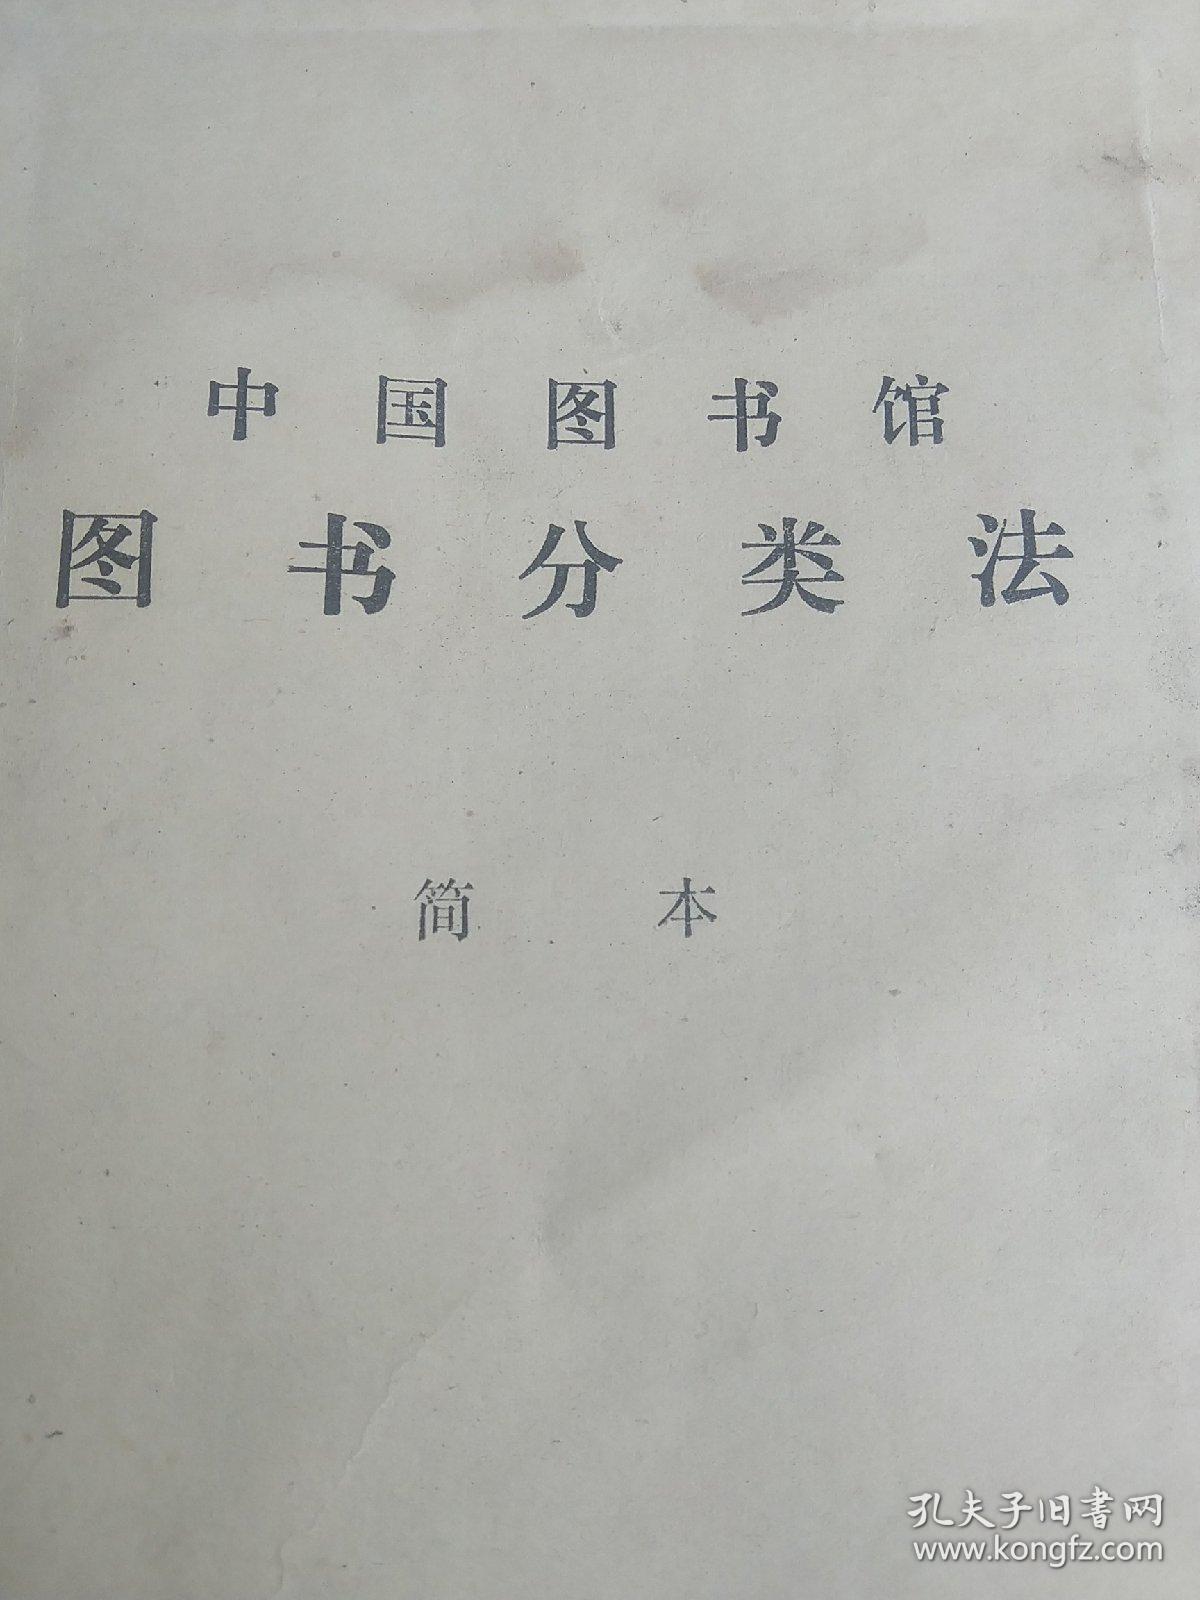 中国图书馆  图书分类法 简本